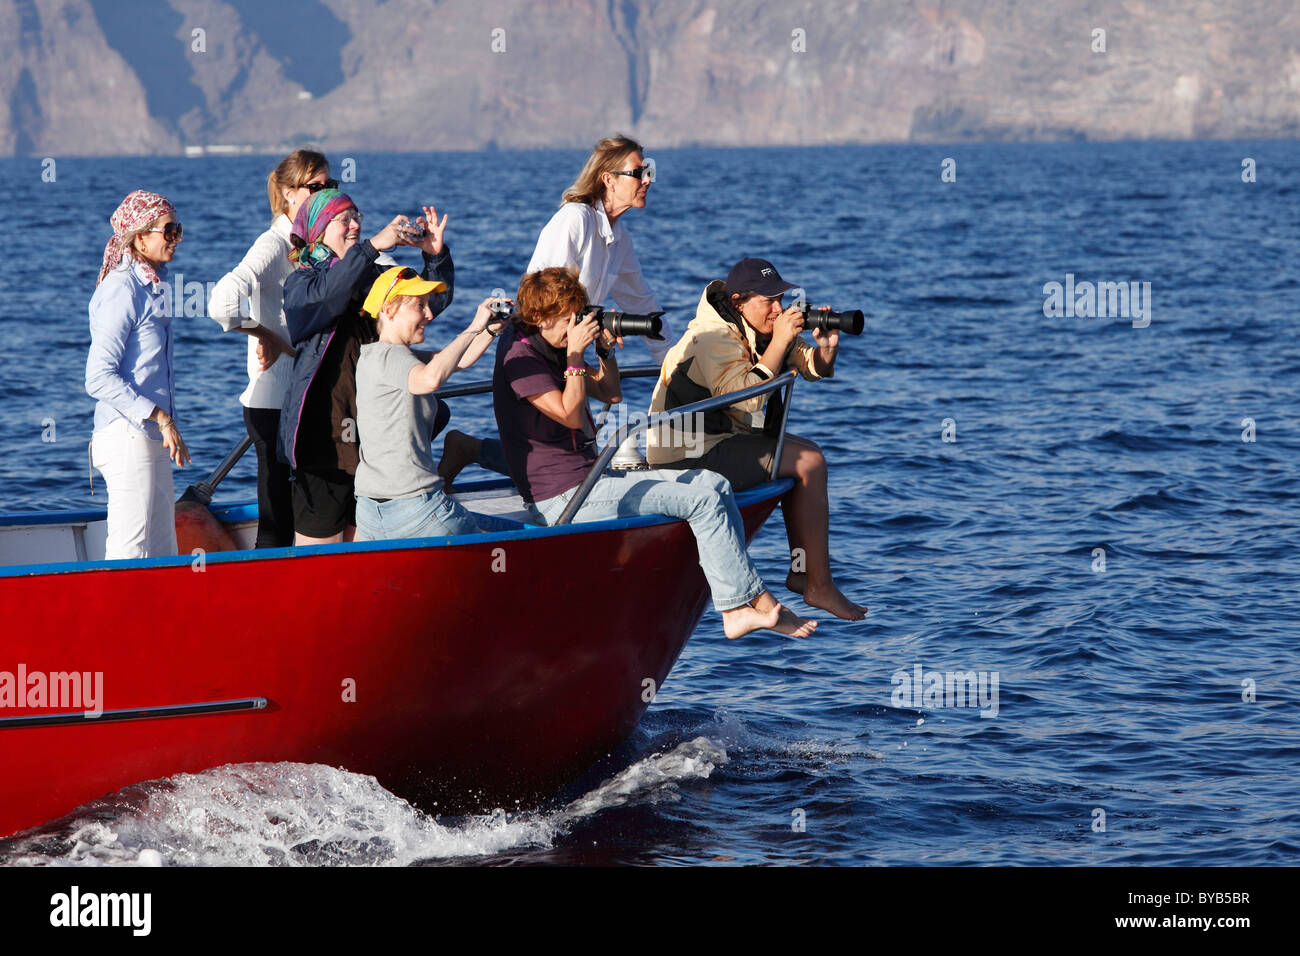 Fotografieren von Frauen in einem Boot, Walbeobachtung, La Gomera, Kanarische Inseln, Spanien, Europa Stockfoto